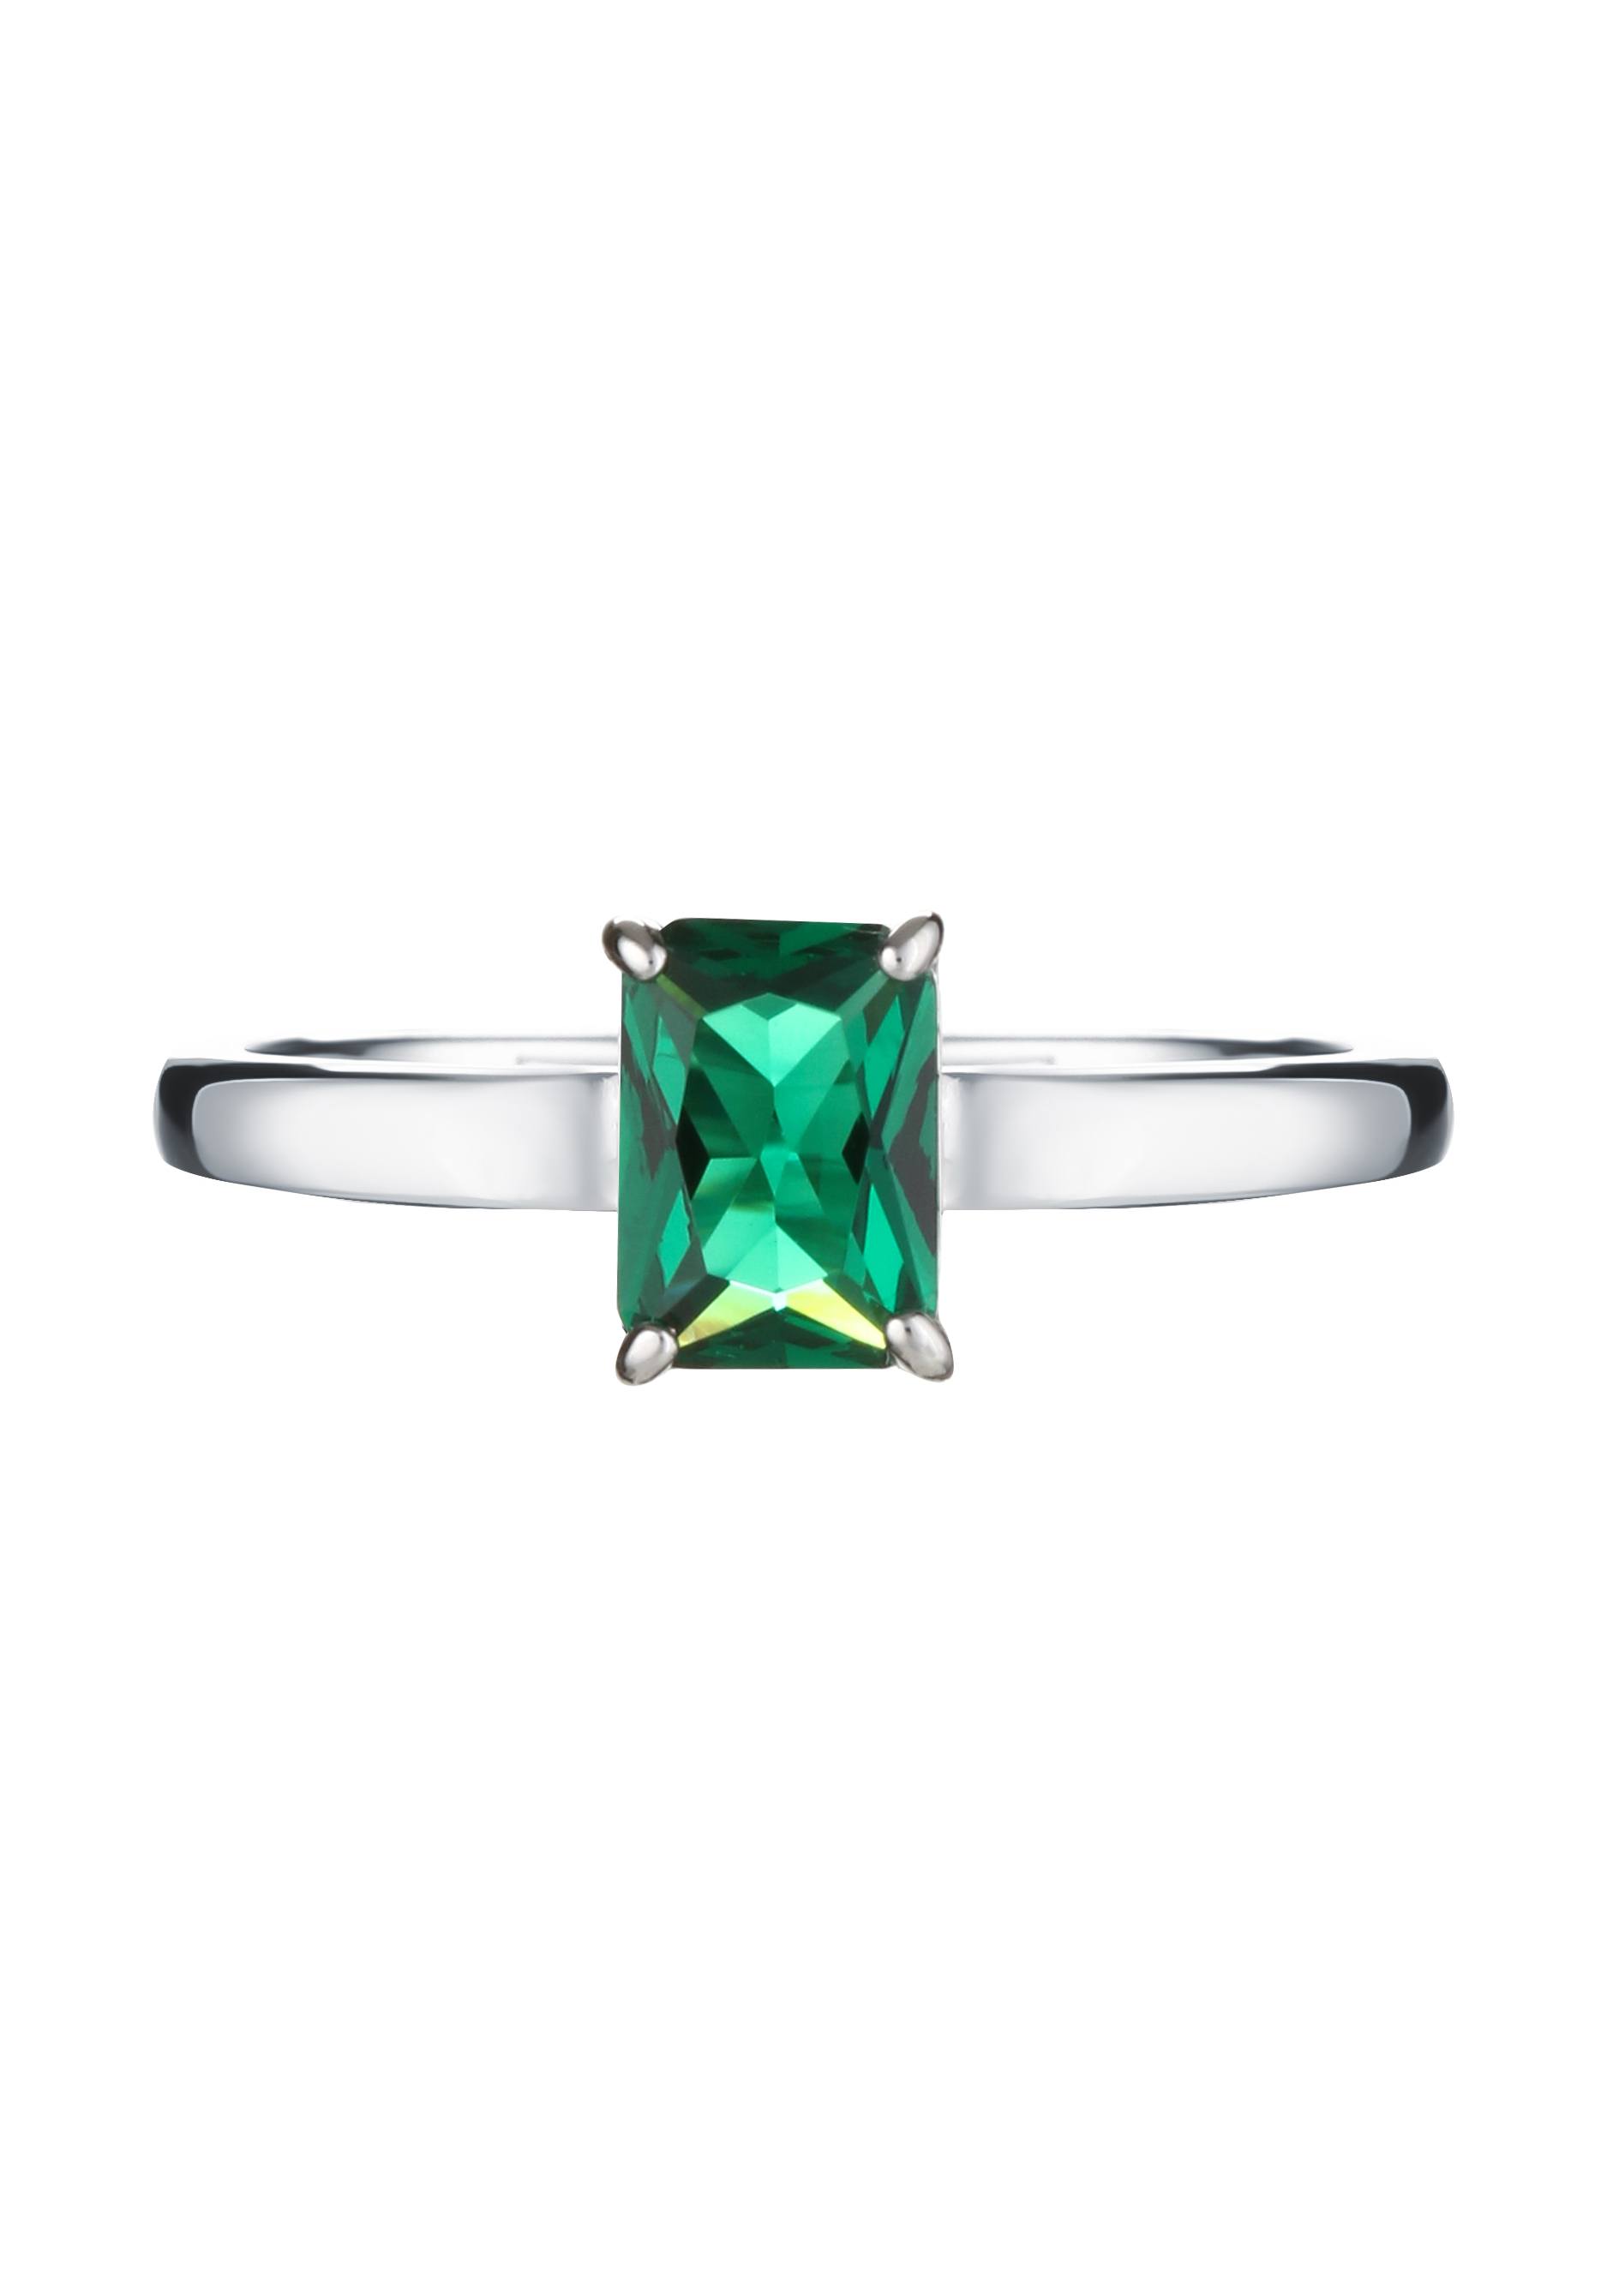 Кольцо серебряное "Магическое сияние" АЛЬКОР, цвет зеленый, размер 18 солитер - фото 2